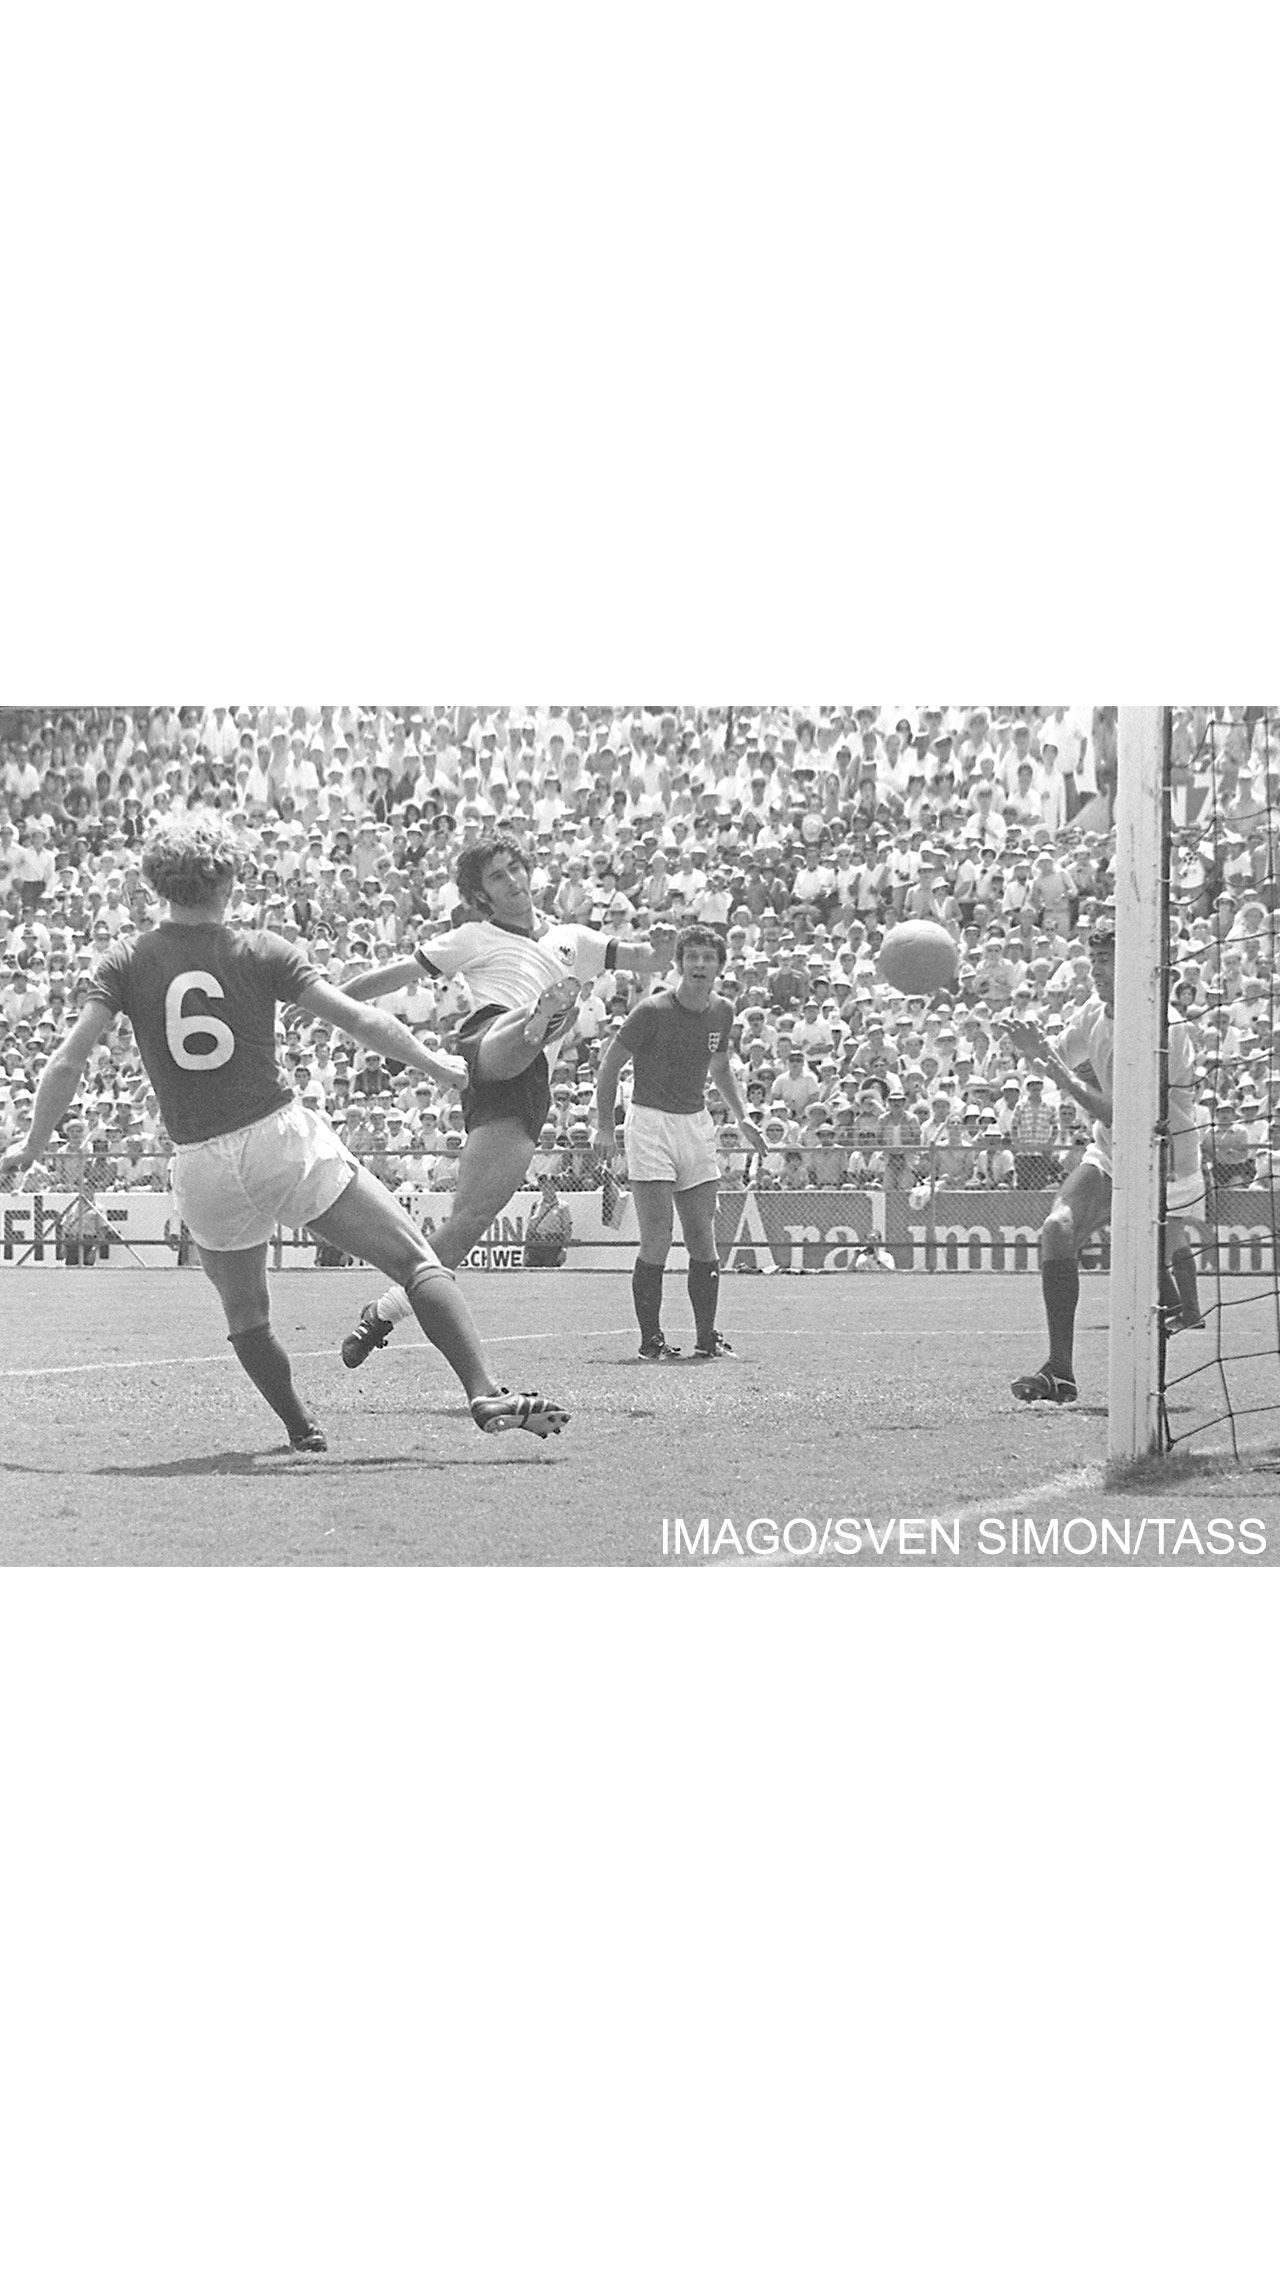 Италия – ФРГ (4:3 д. в.) – полуфинал ЧМ-1970